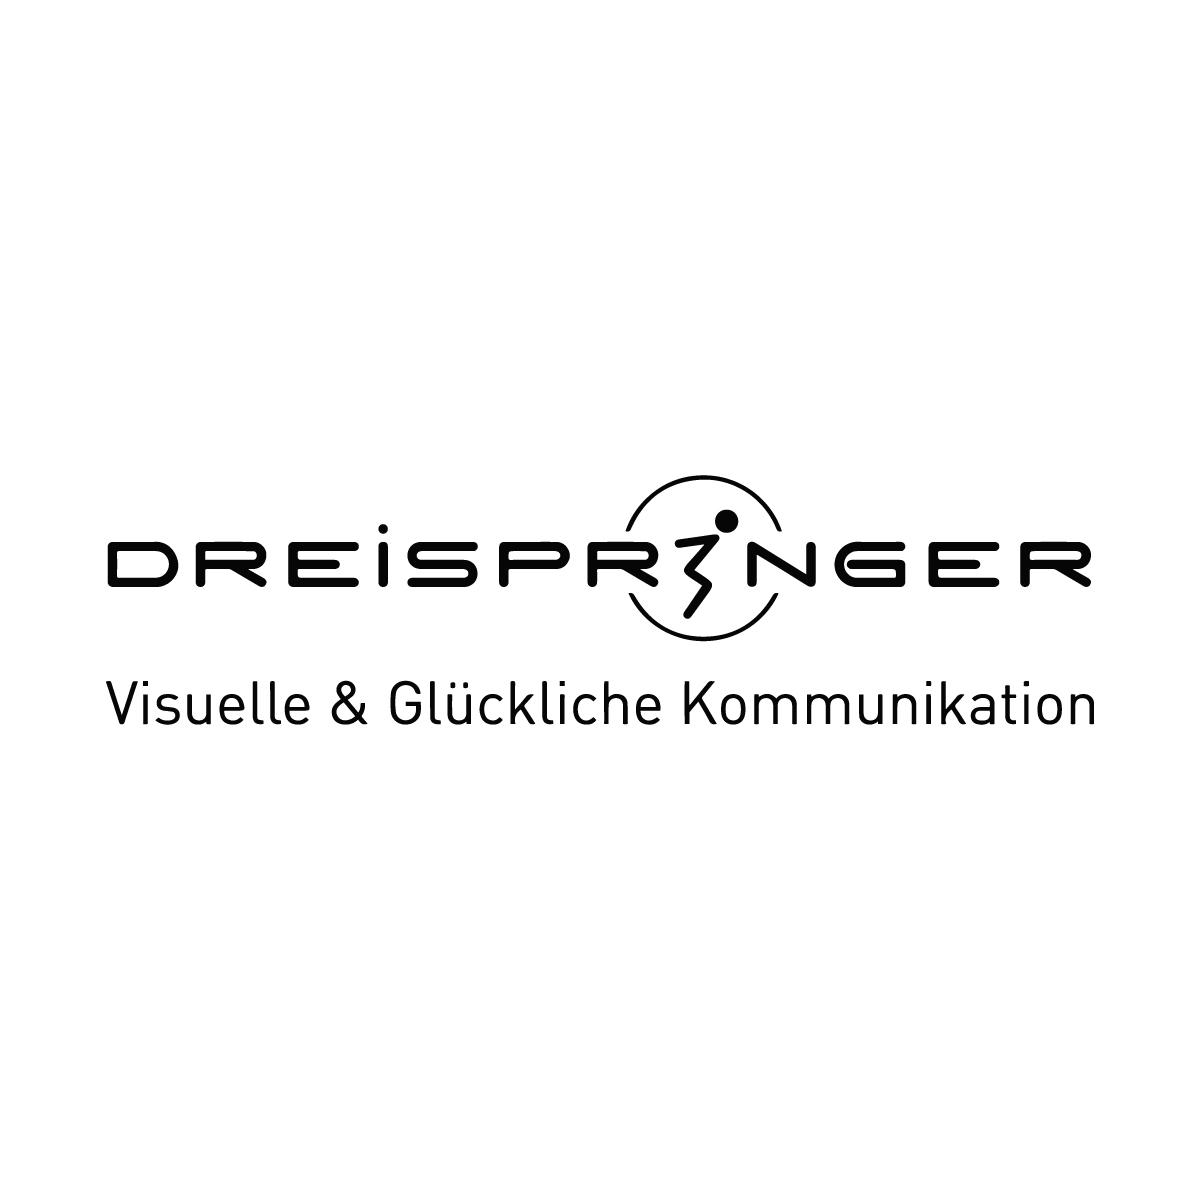 Dreispringer GmbH